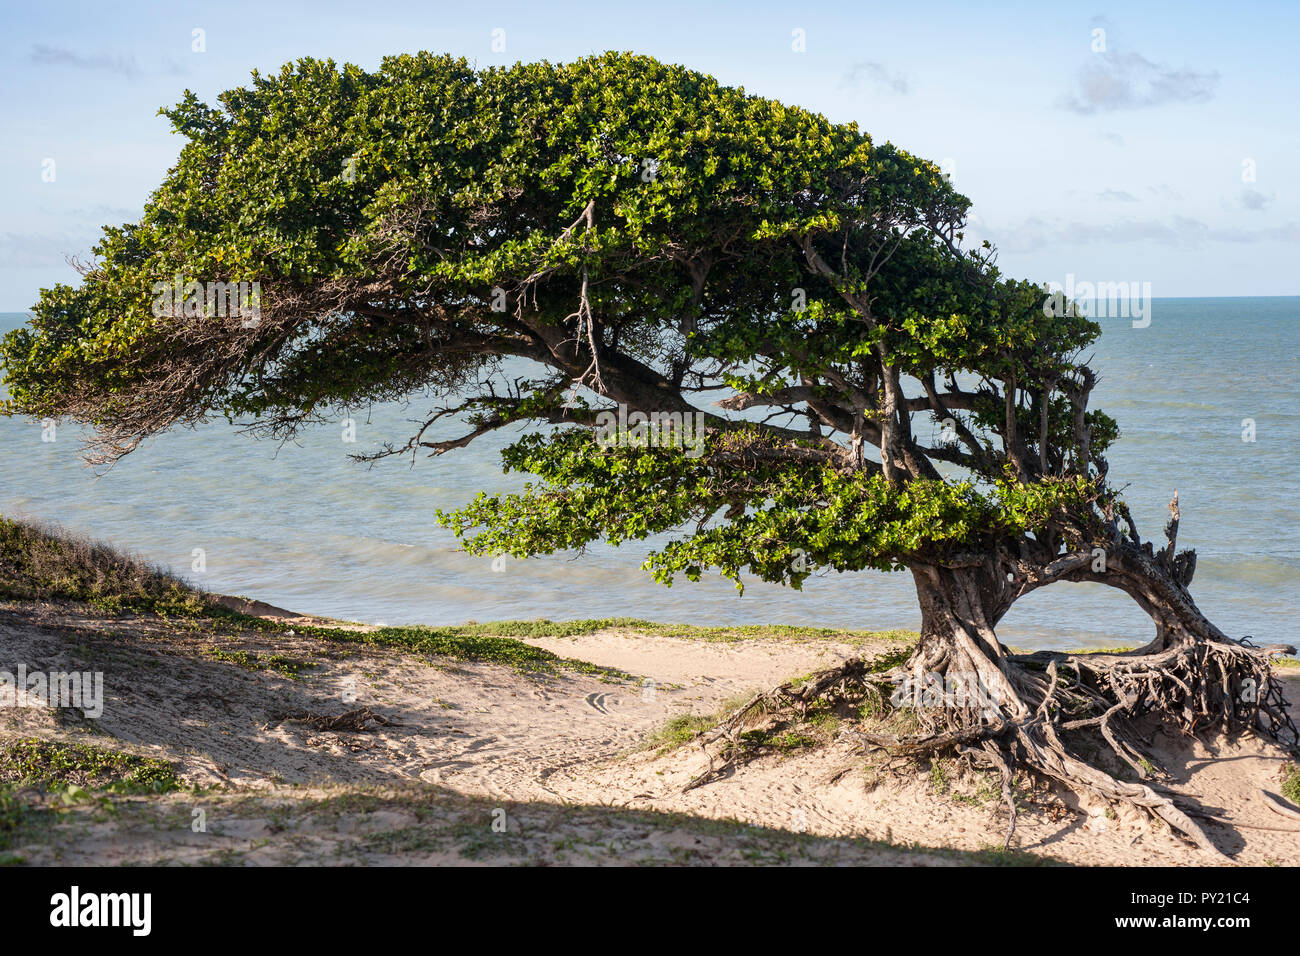 Il Arvore fare Amores, amante di albero, situato vicino alla spiaggia di Cabo Sao Roque, vicino a Touros, Rio Grande do Norte, Brasile Foto Stock